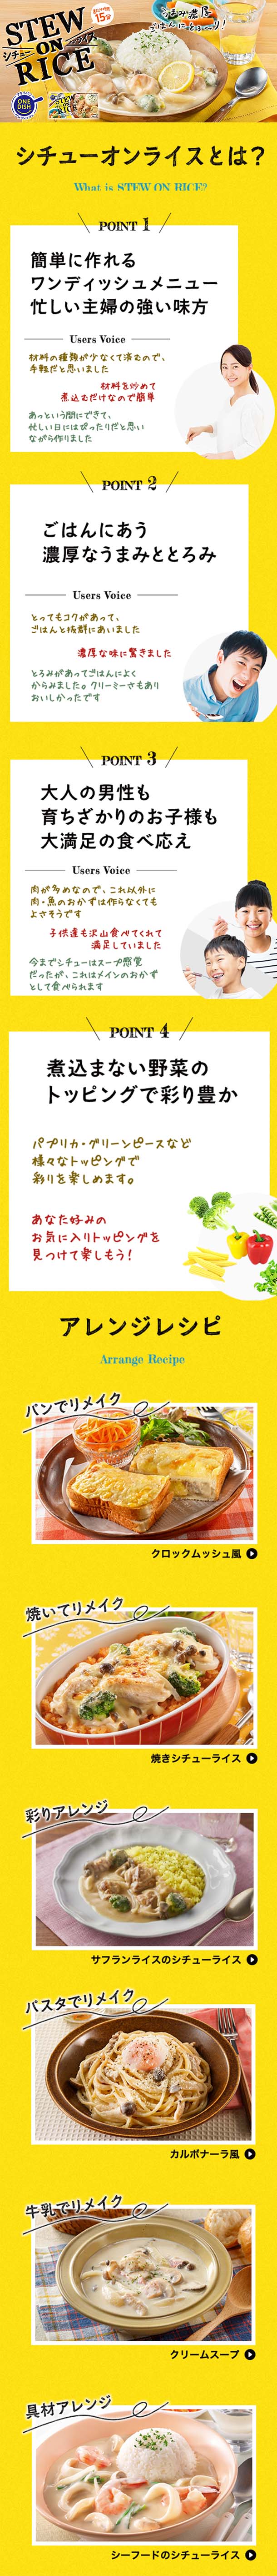 ハウス食品「シチューオンライス鶏肉のクリーム煮ソース」30箱 Kuradashi